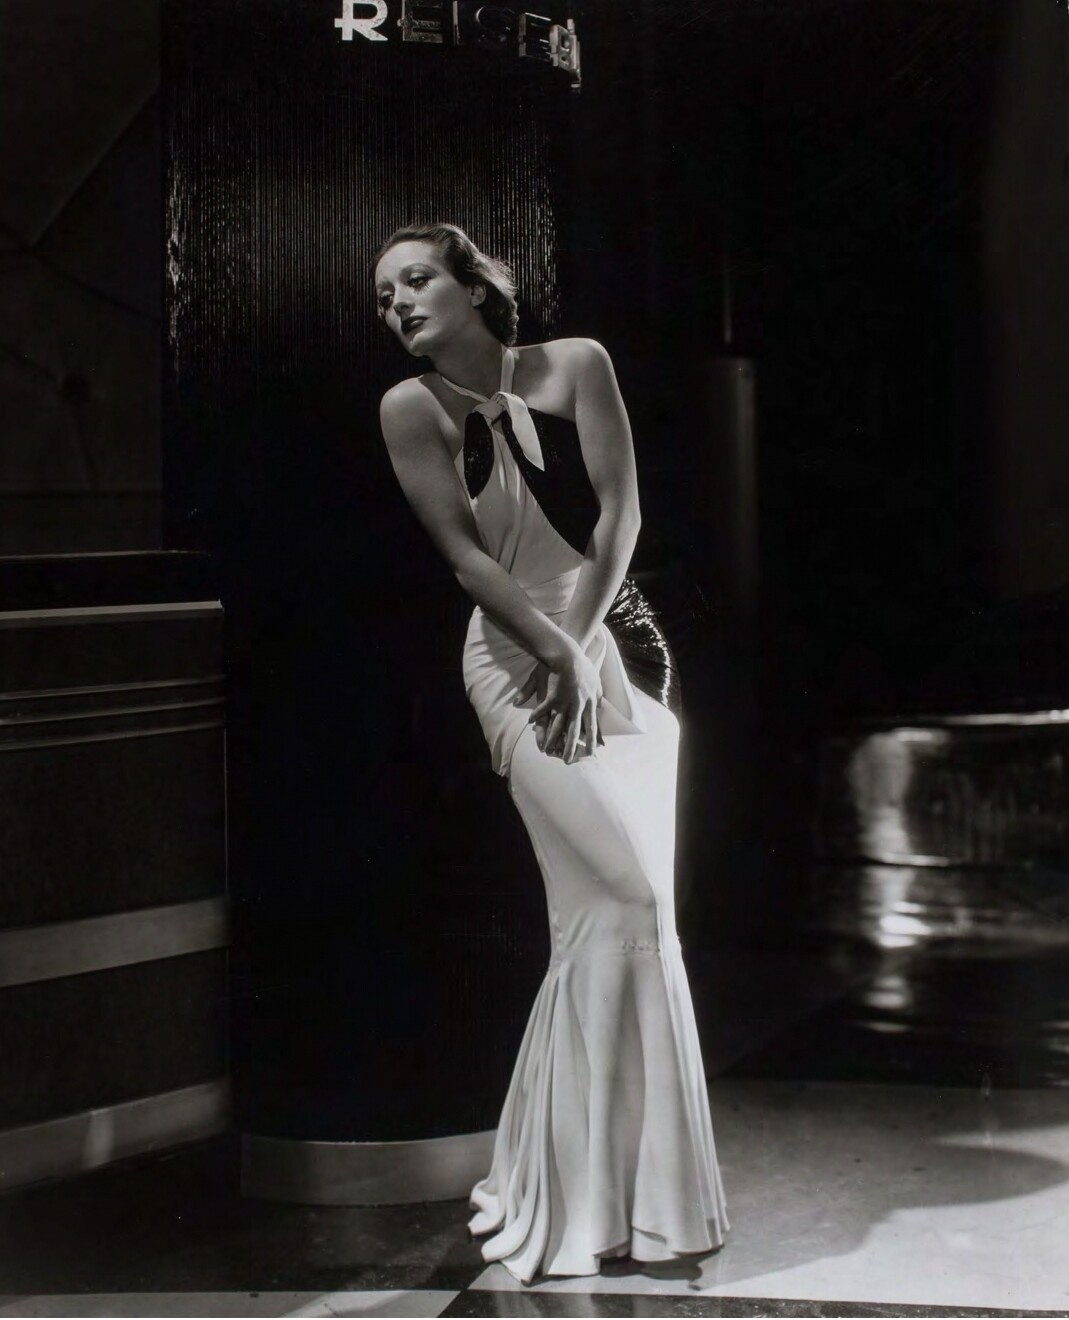 Джоан Кроуфорд, 1932. Фотограф Джордж Харрелл